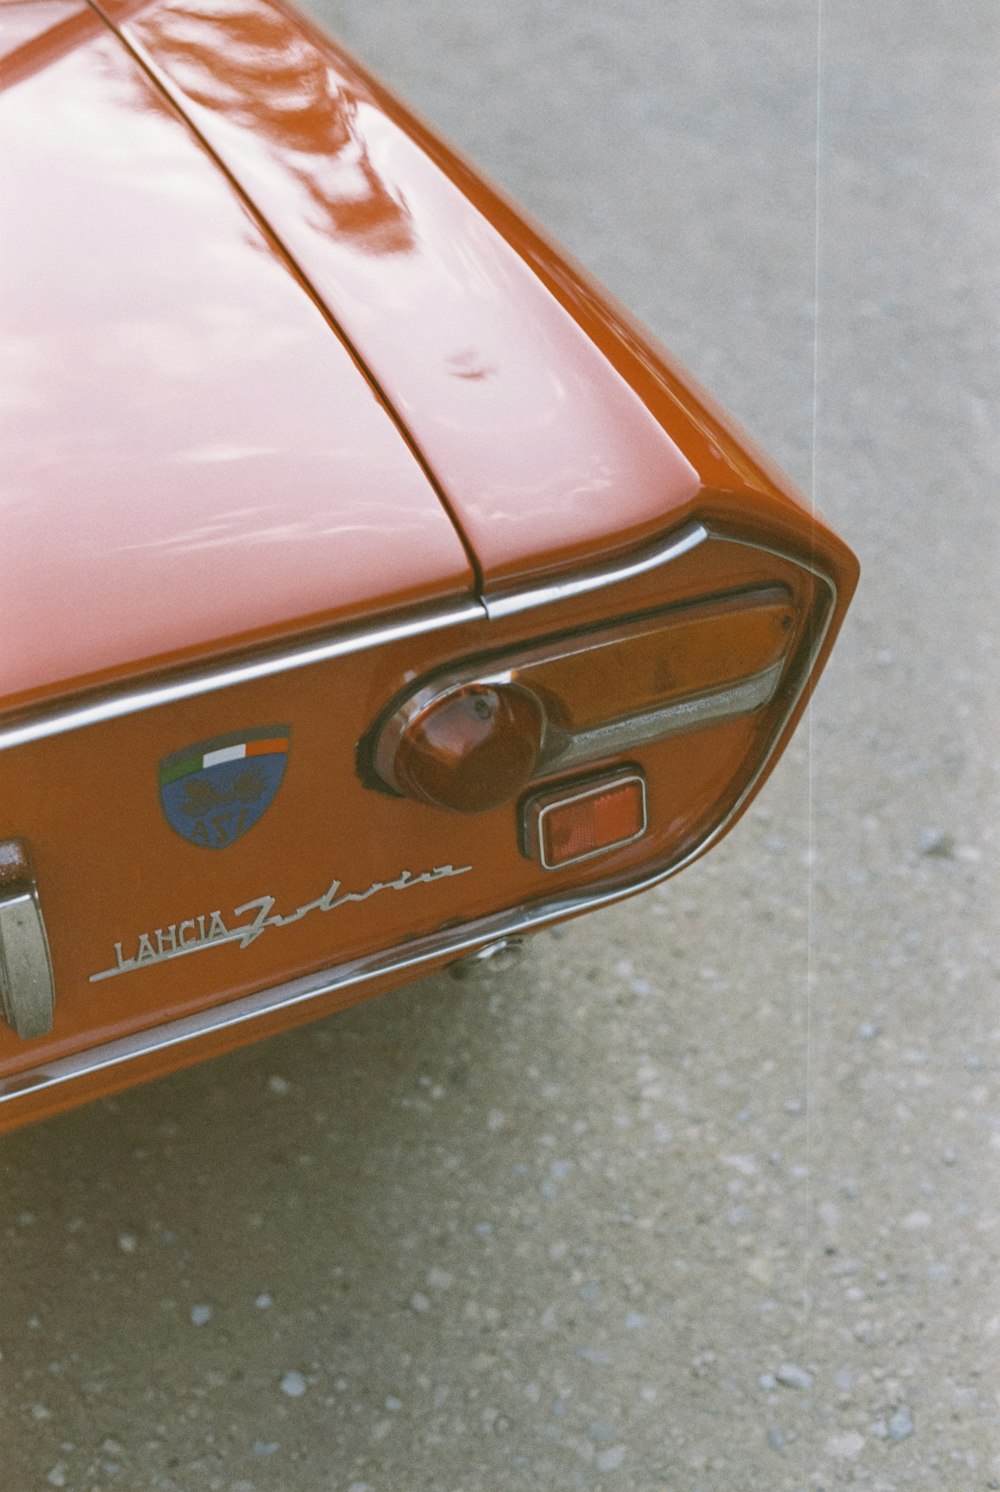 um close up de um carro vermelho com um emblema nele